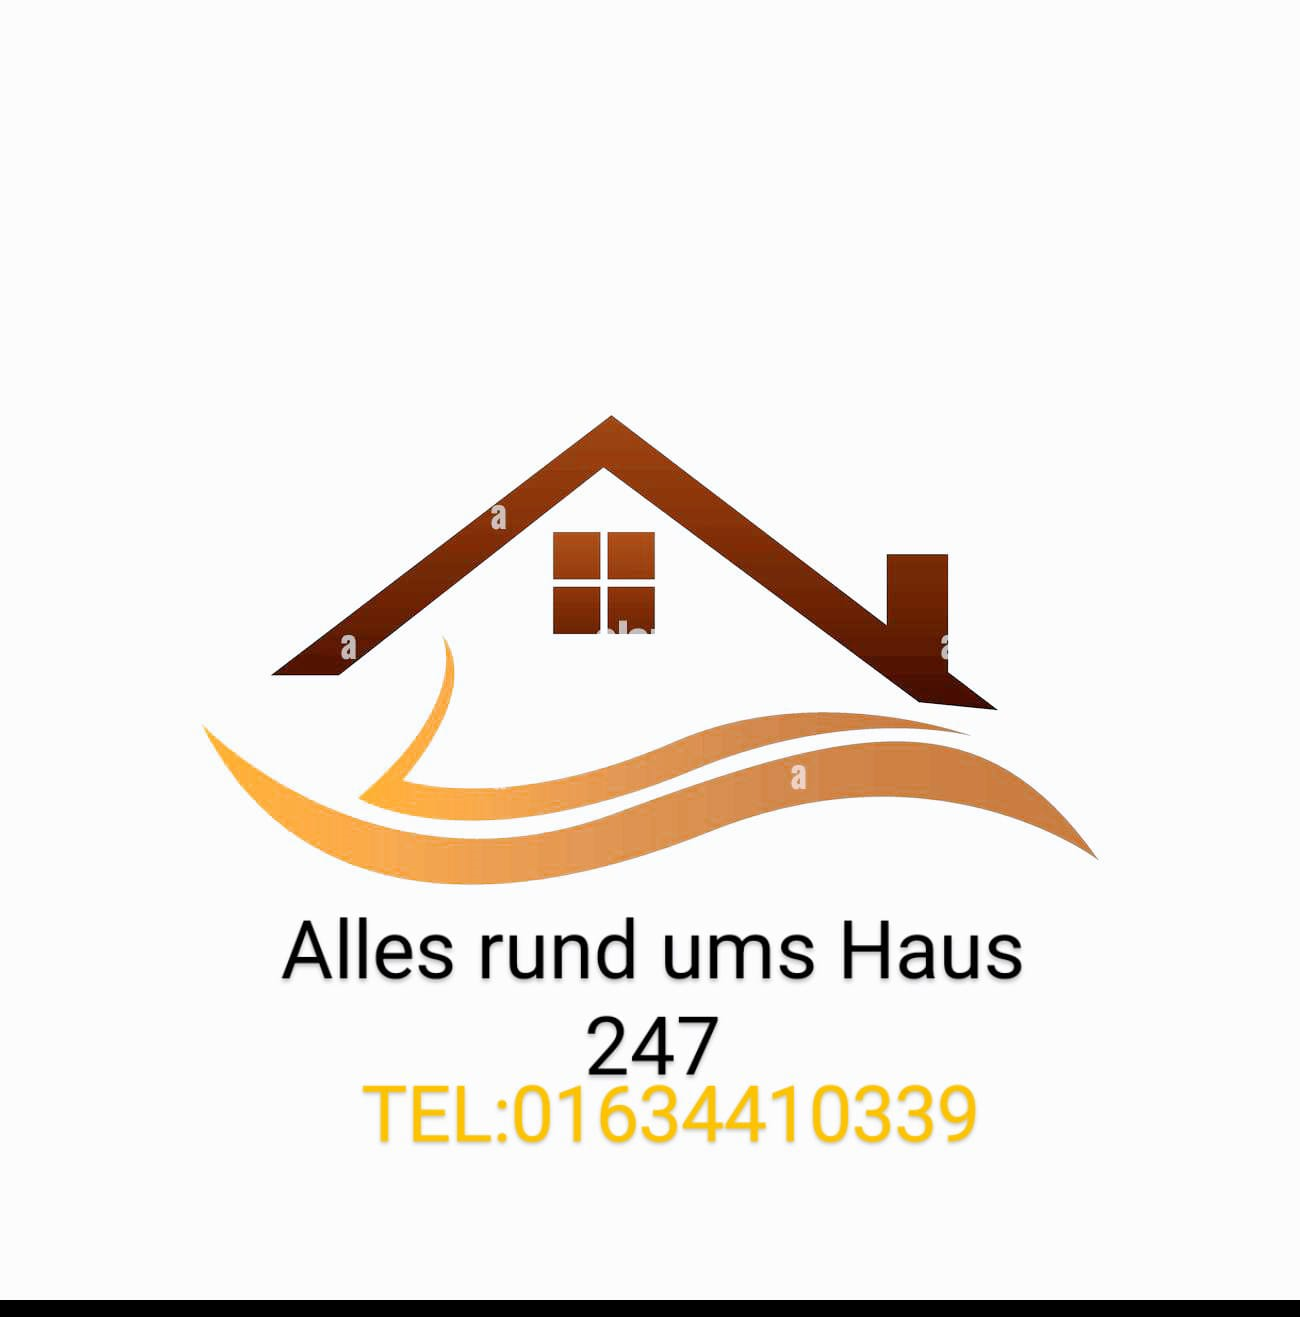 Alles-Rund-ums-Haus-24-7, Unterbruch 62 in Willich